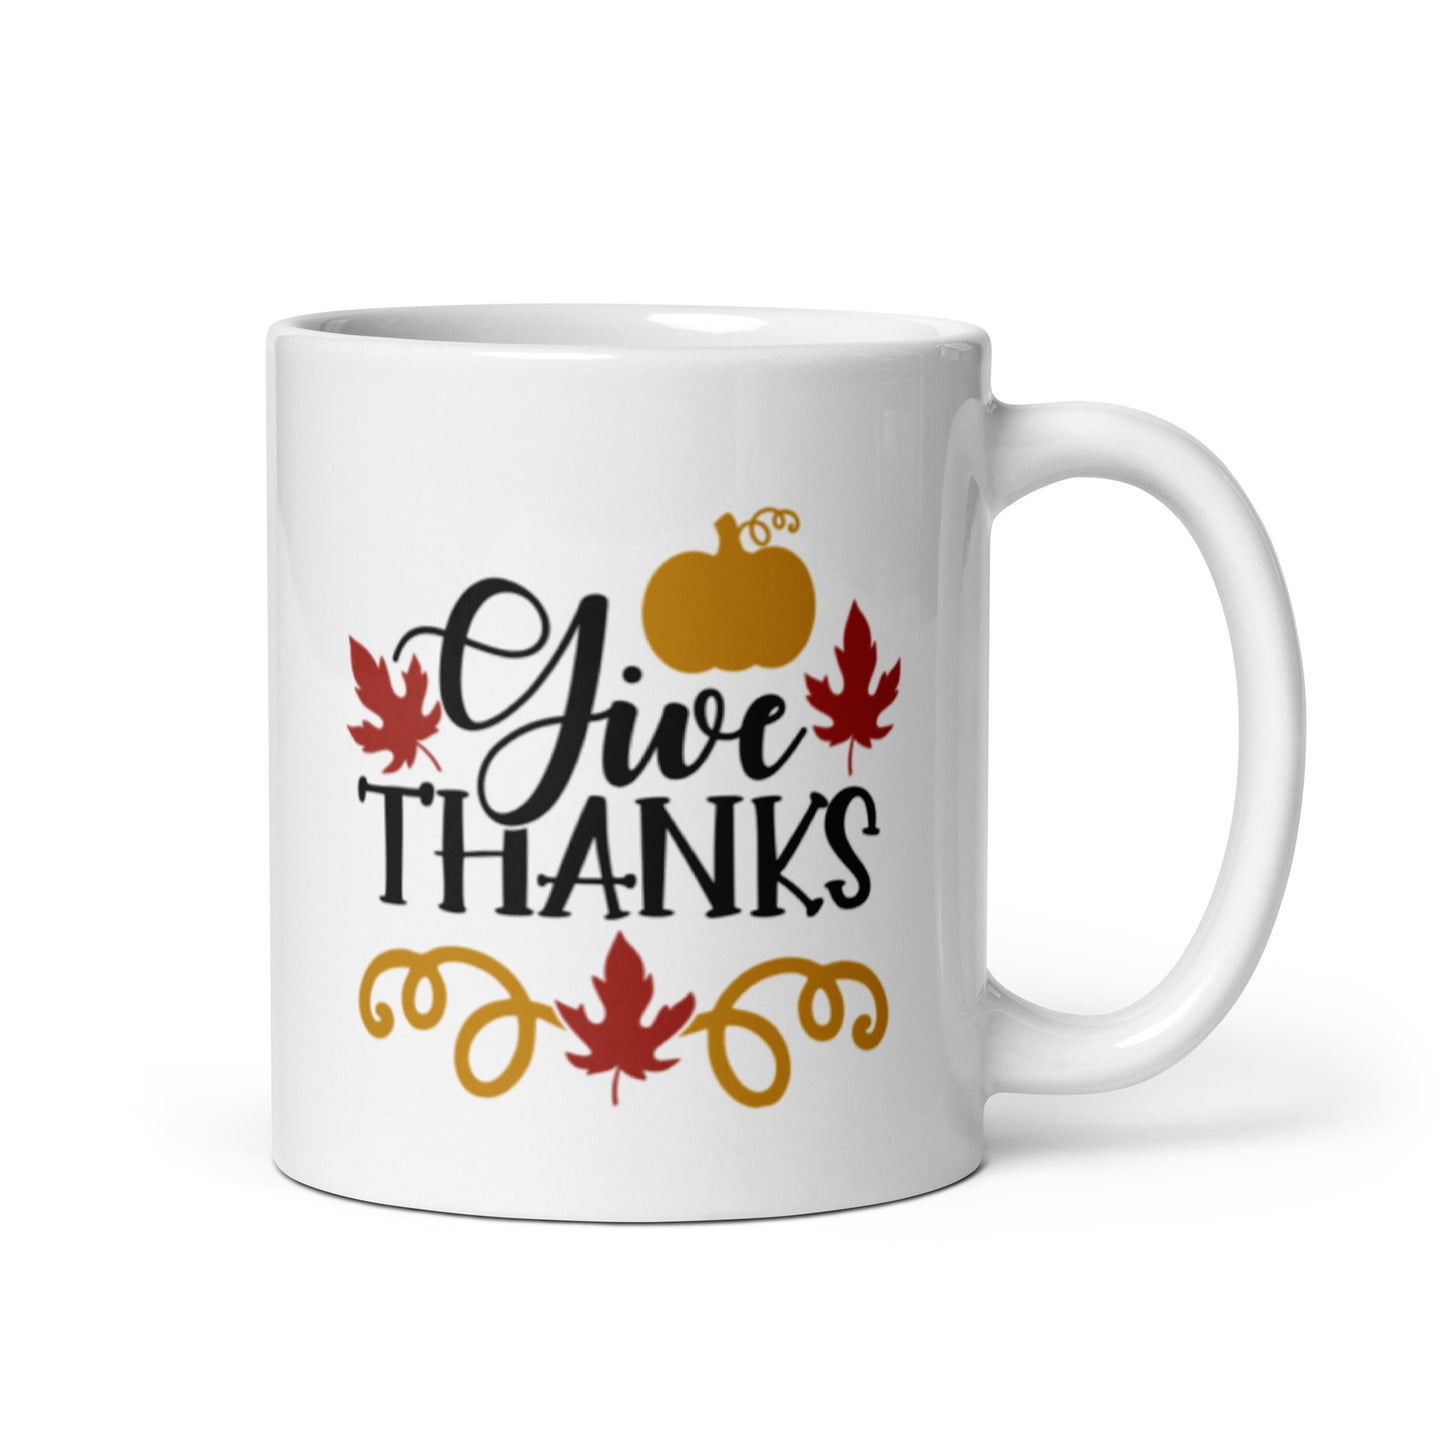 Give Thanks White glossy mug